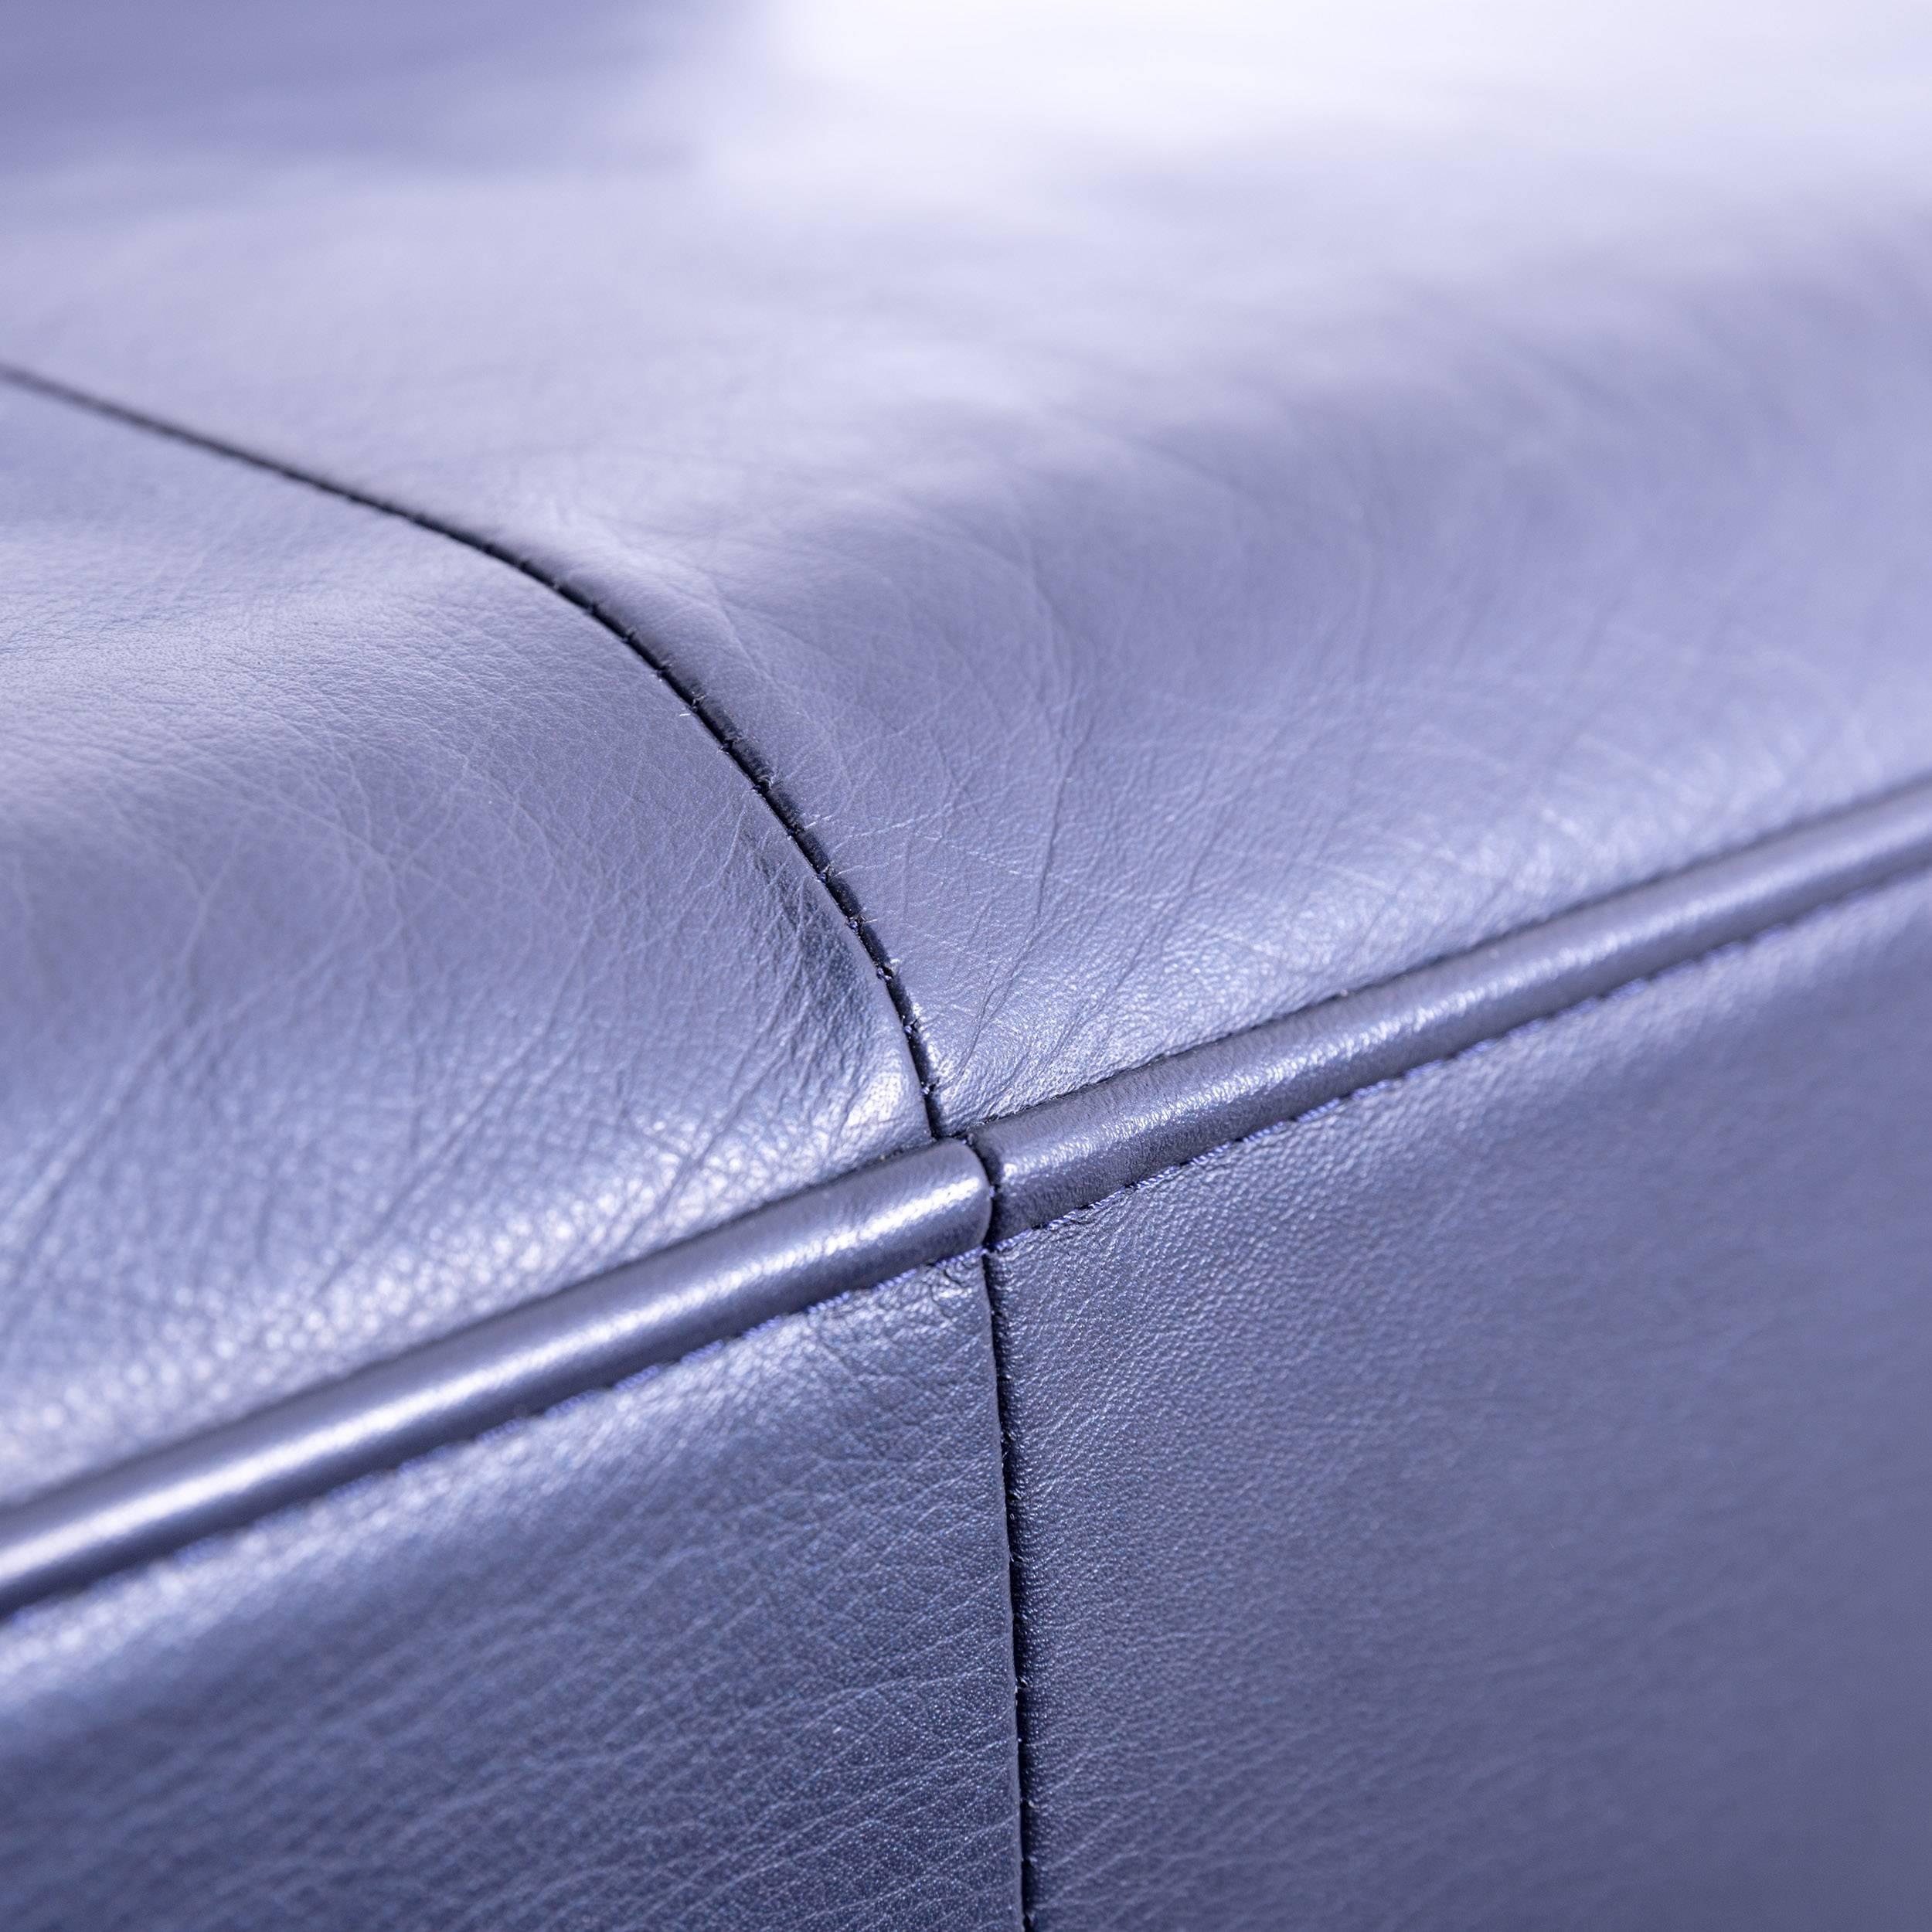 Rolf Benz Dono Designer Corner Sofa Leather Navy Blue Dark Blue Sleeping Couch 2